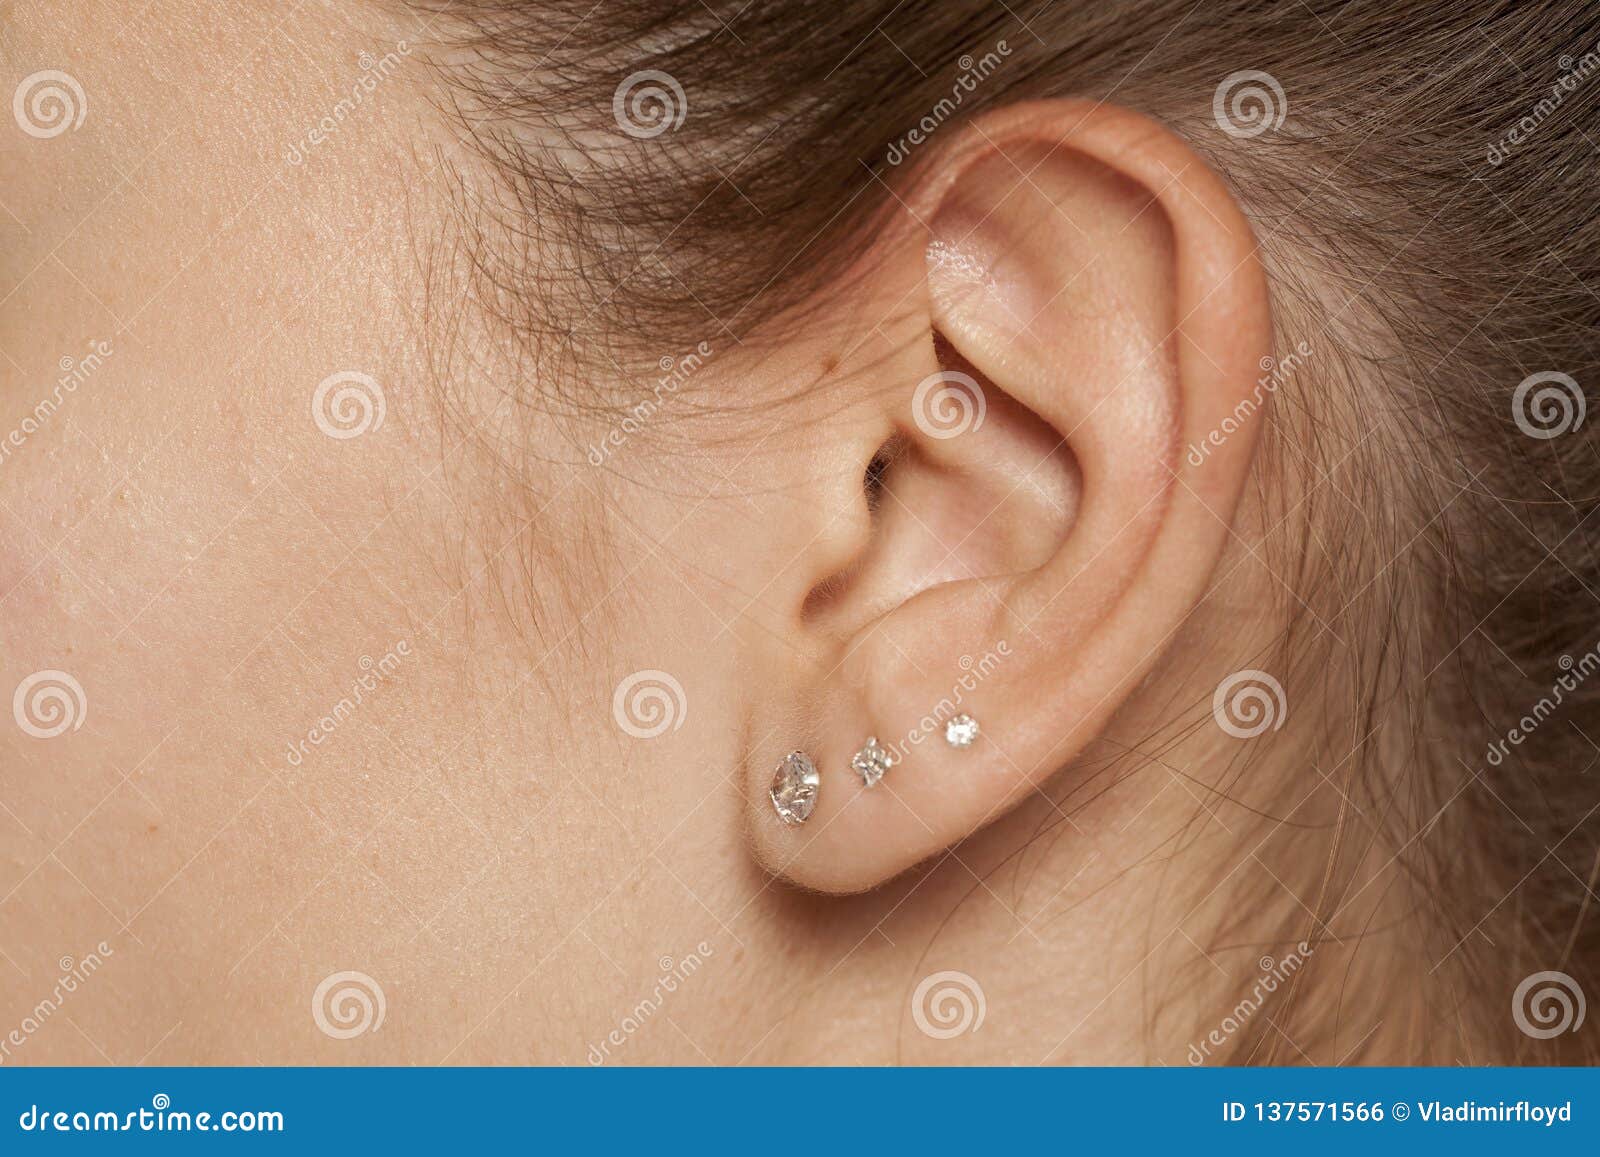 Θηλυκό αυτί με τα σκουλαρίκια Στοκ Εικόνες - εικόνα από : 137571566